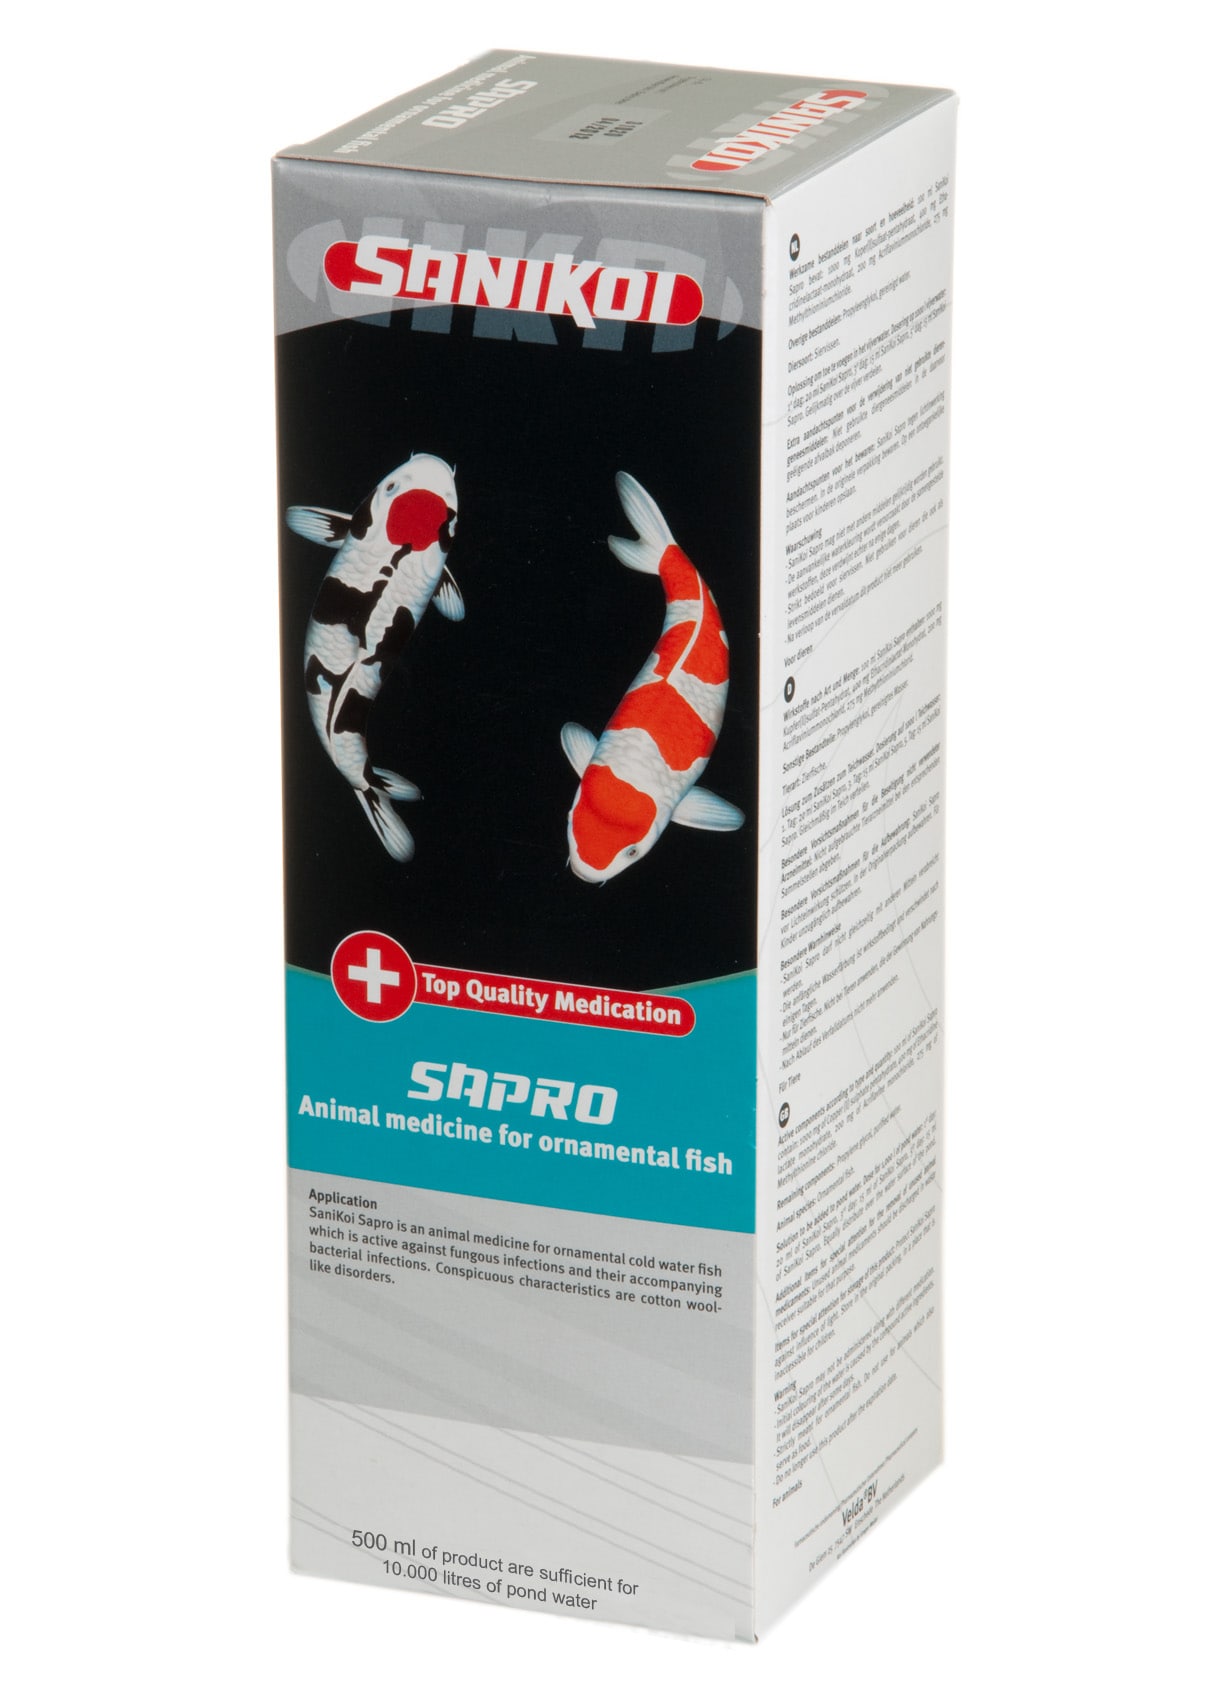 SANIKOI Sapro 500 ml médicament pour poissons de bassin contre les infections fongiques et bactériennes secondaires - Traite jusqu\'à 10000 L